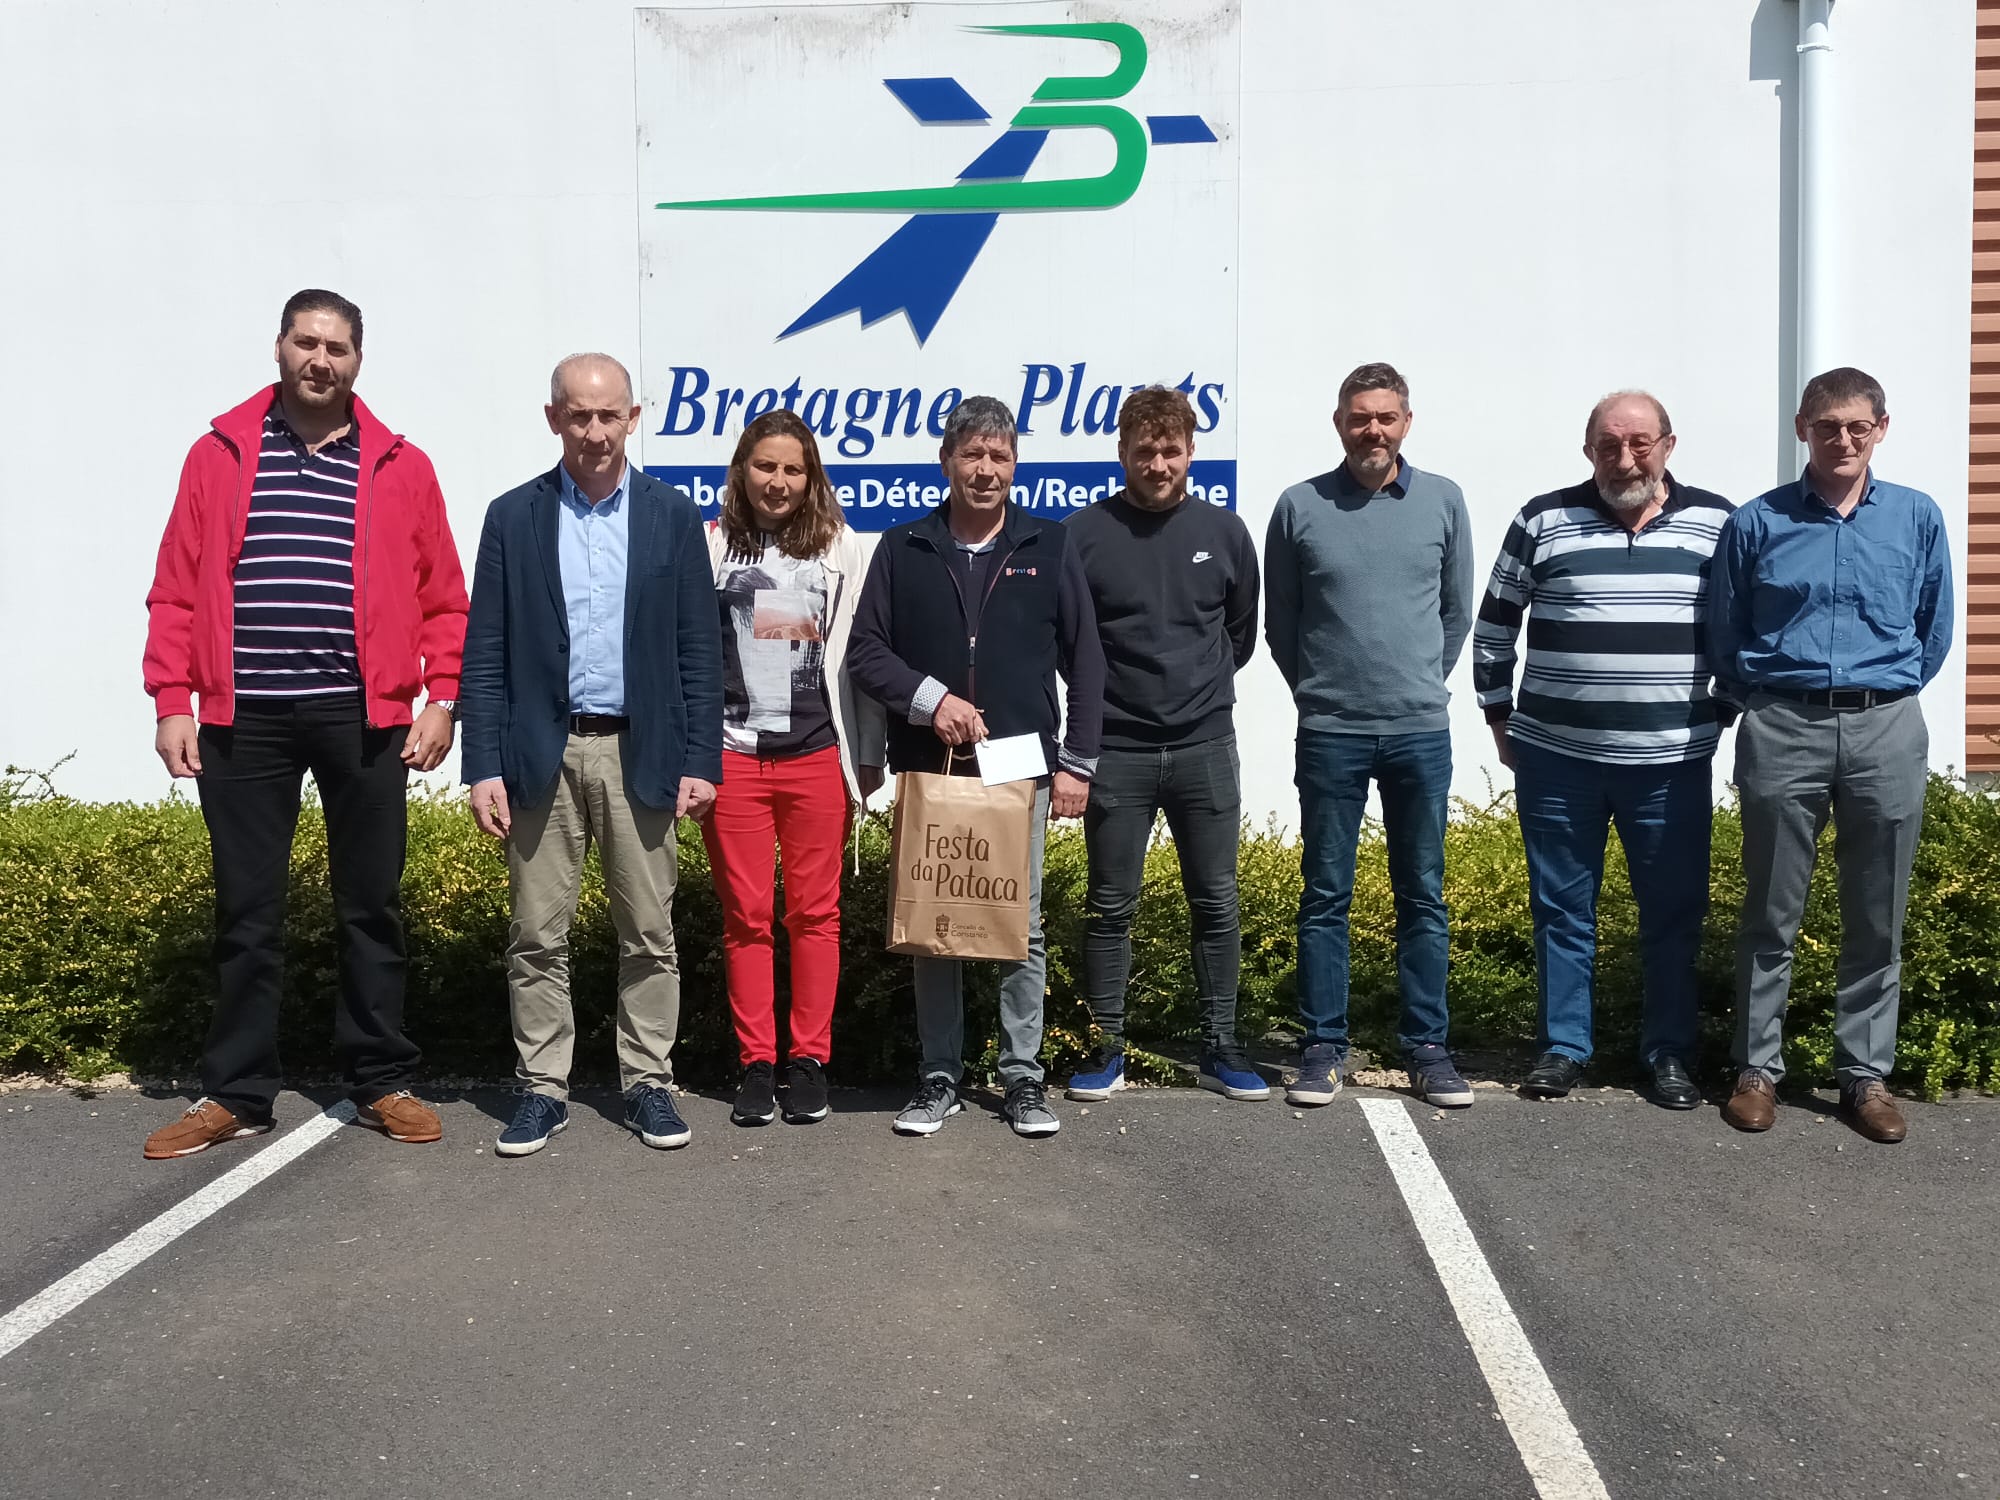 A visita a Bretagne Plants estivo encabezada polo alcalde de Coristanco, Juan Carlos García Pose, que tamén é produtor de pataca